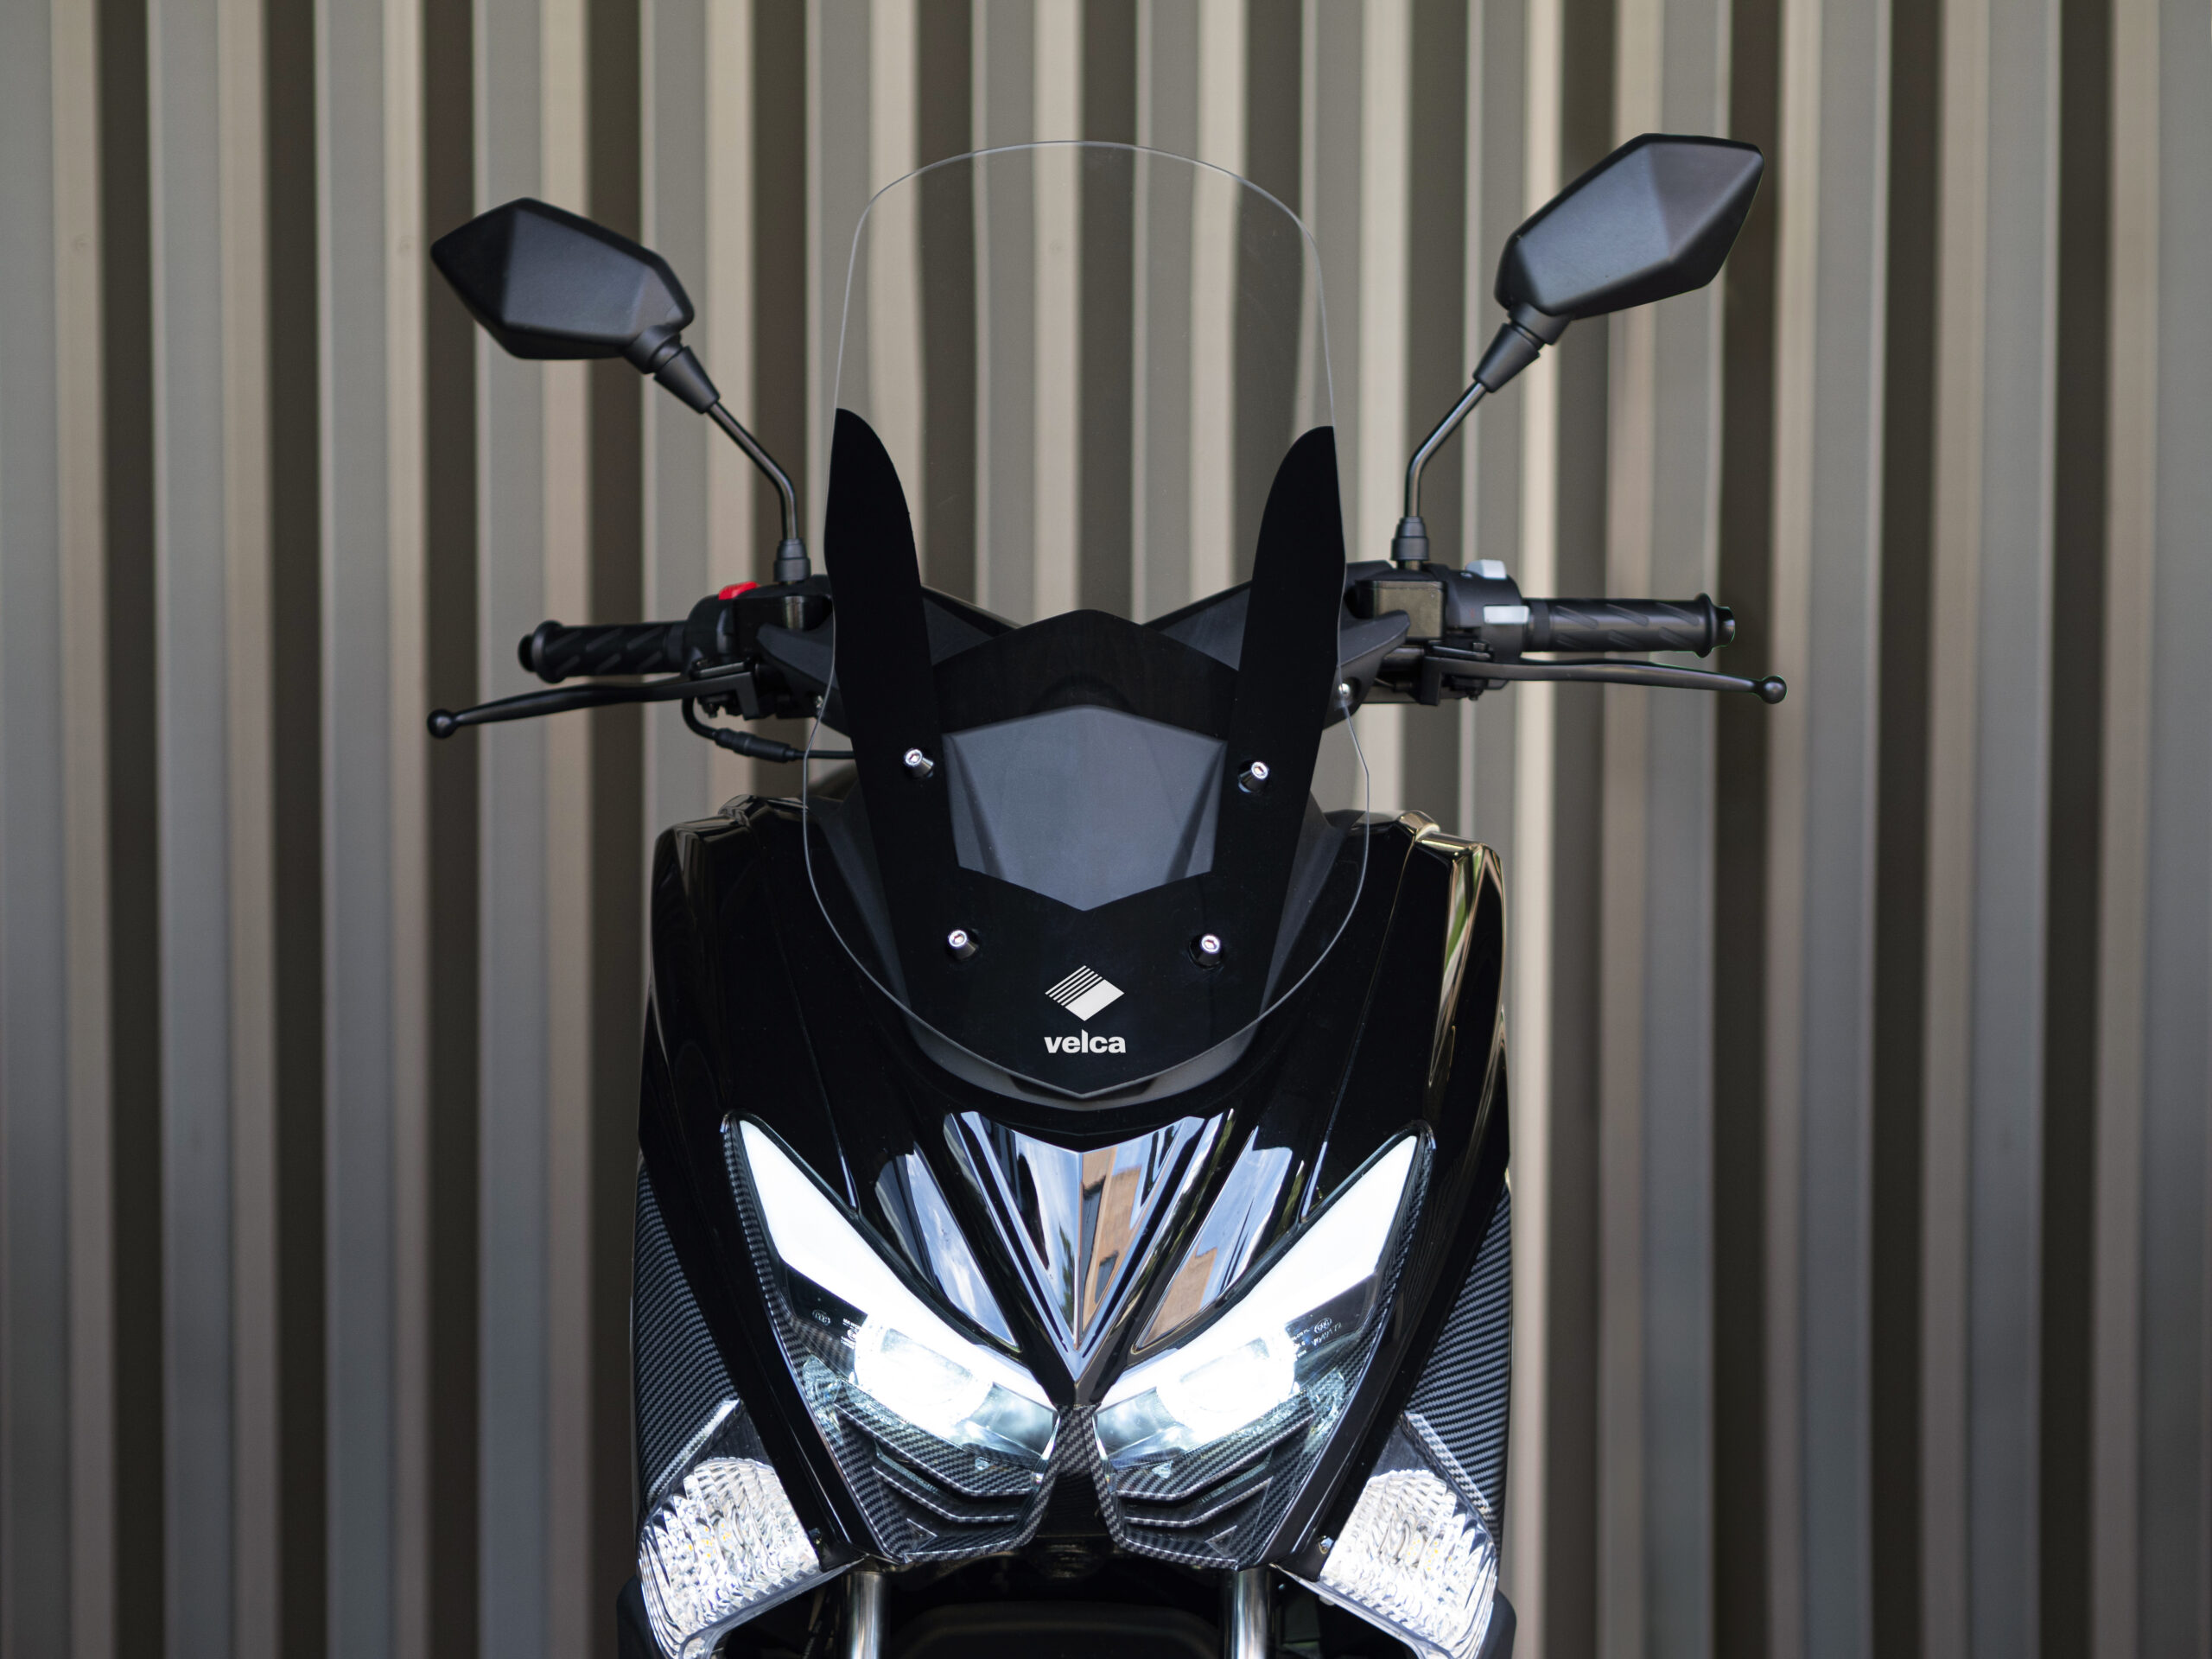 Nova Velca ONE chega a Portugal: conheça a moto elétrica que finalmente supera as de combustão de 125 cc